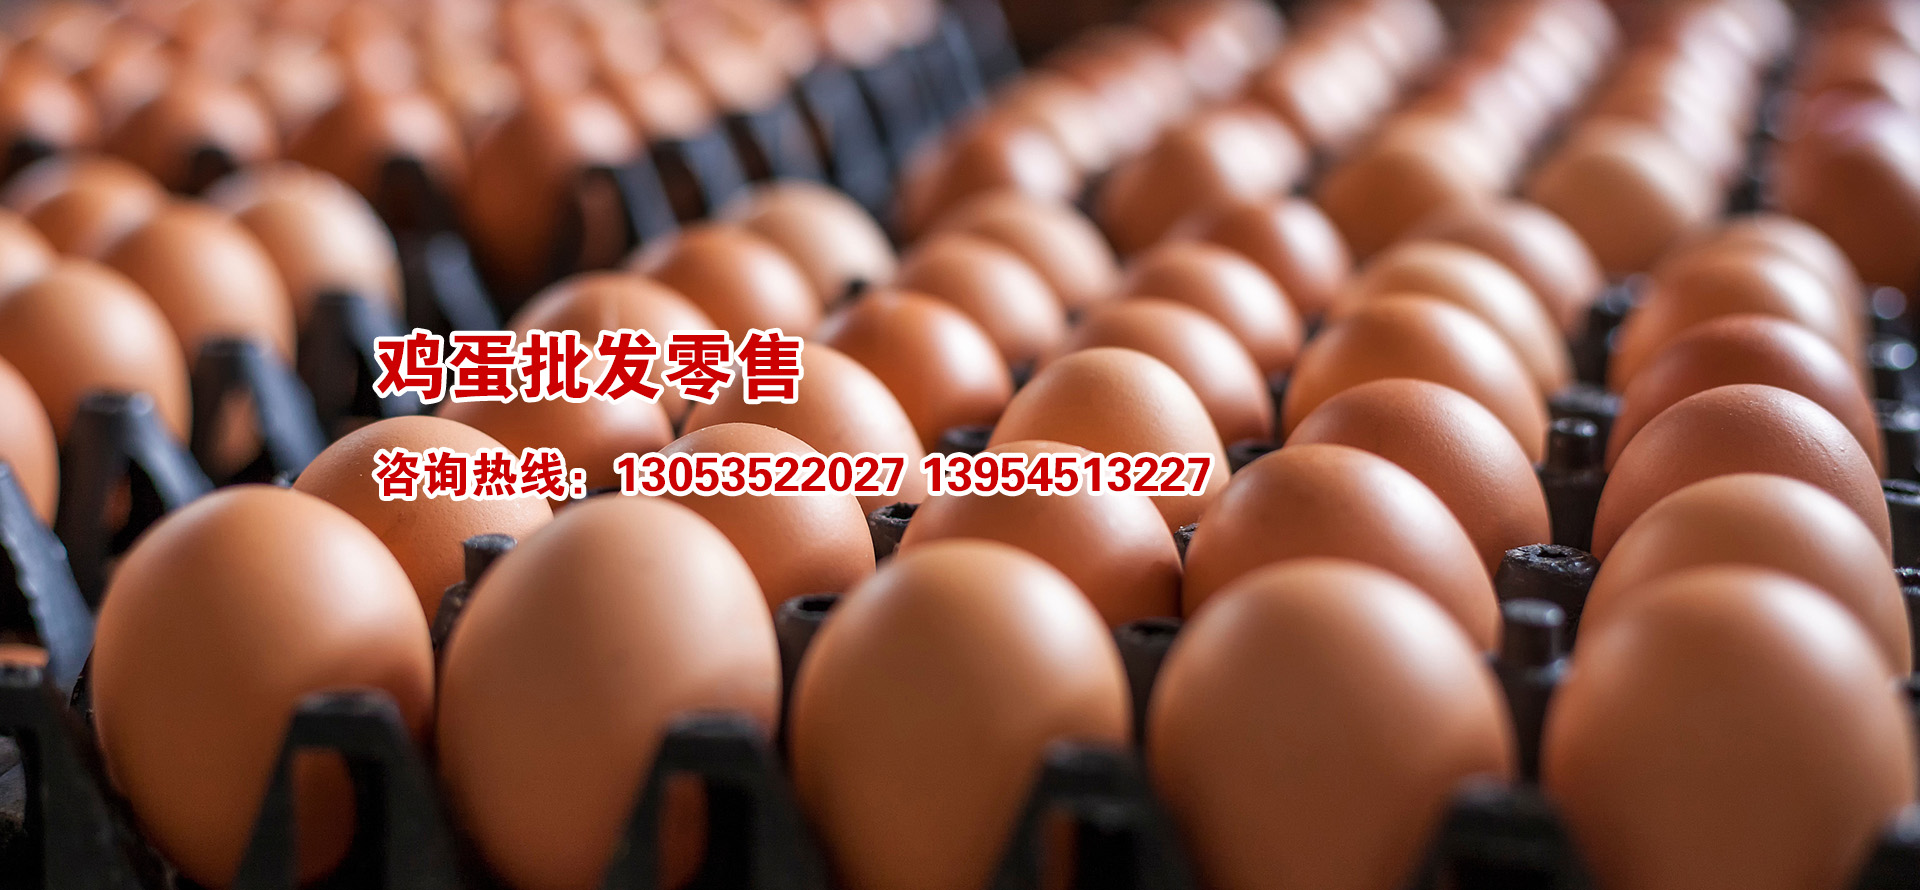 海陽鴻牧種雞有(yǒu)限公司